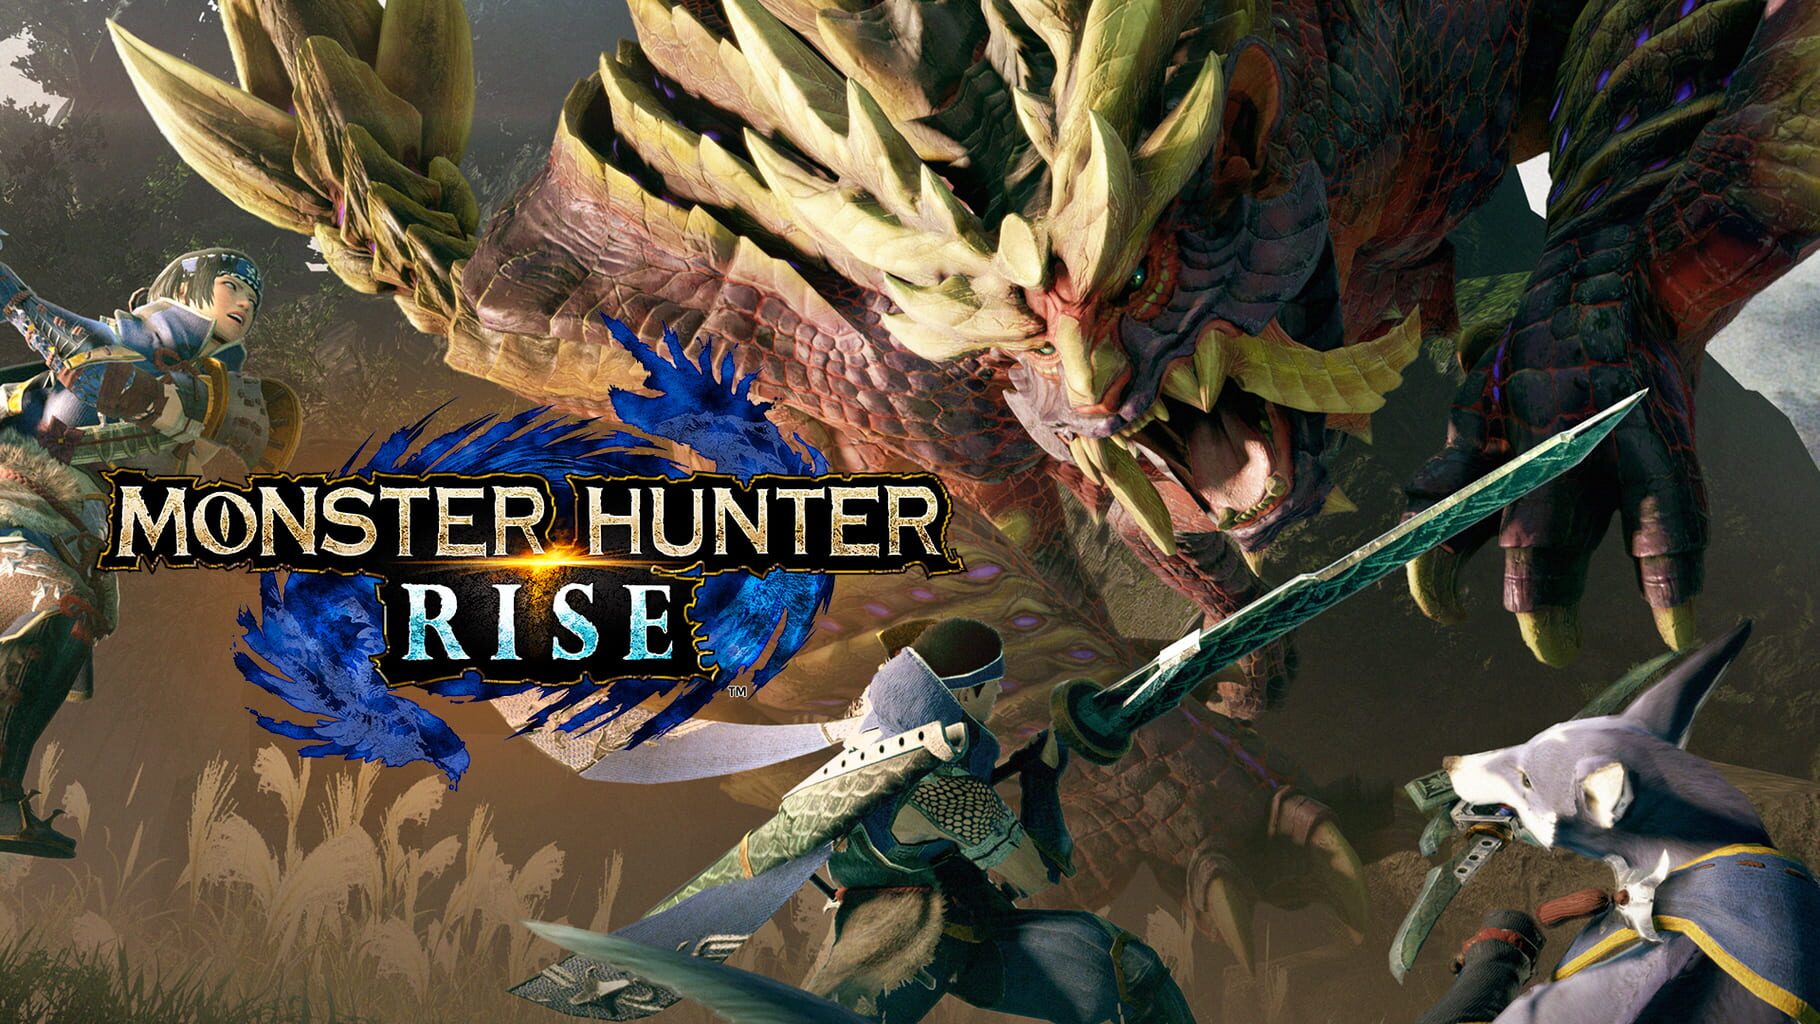 Arte - Monster Hunter Rise